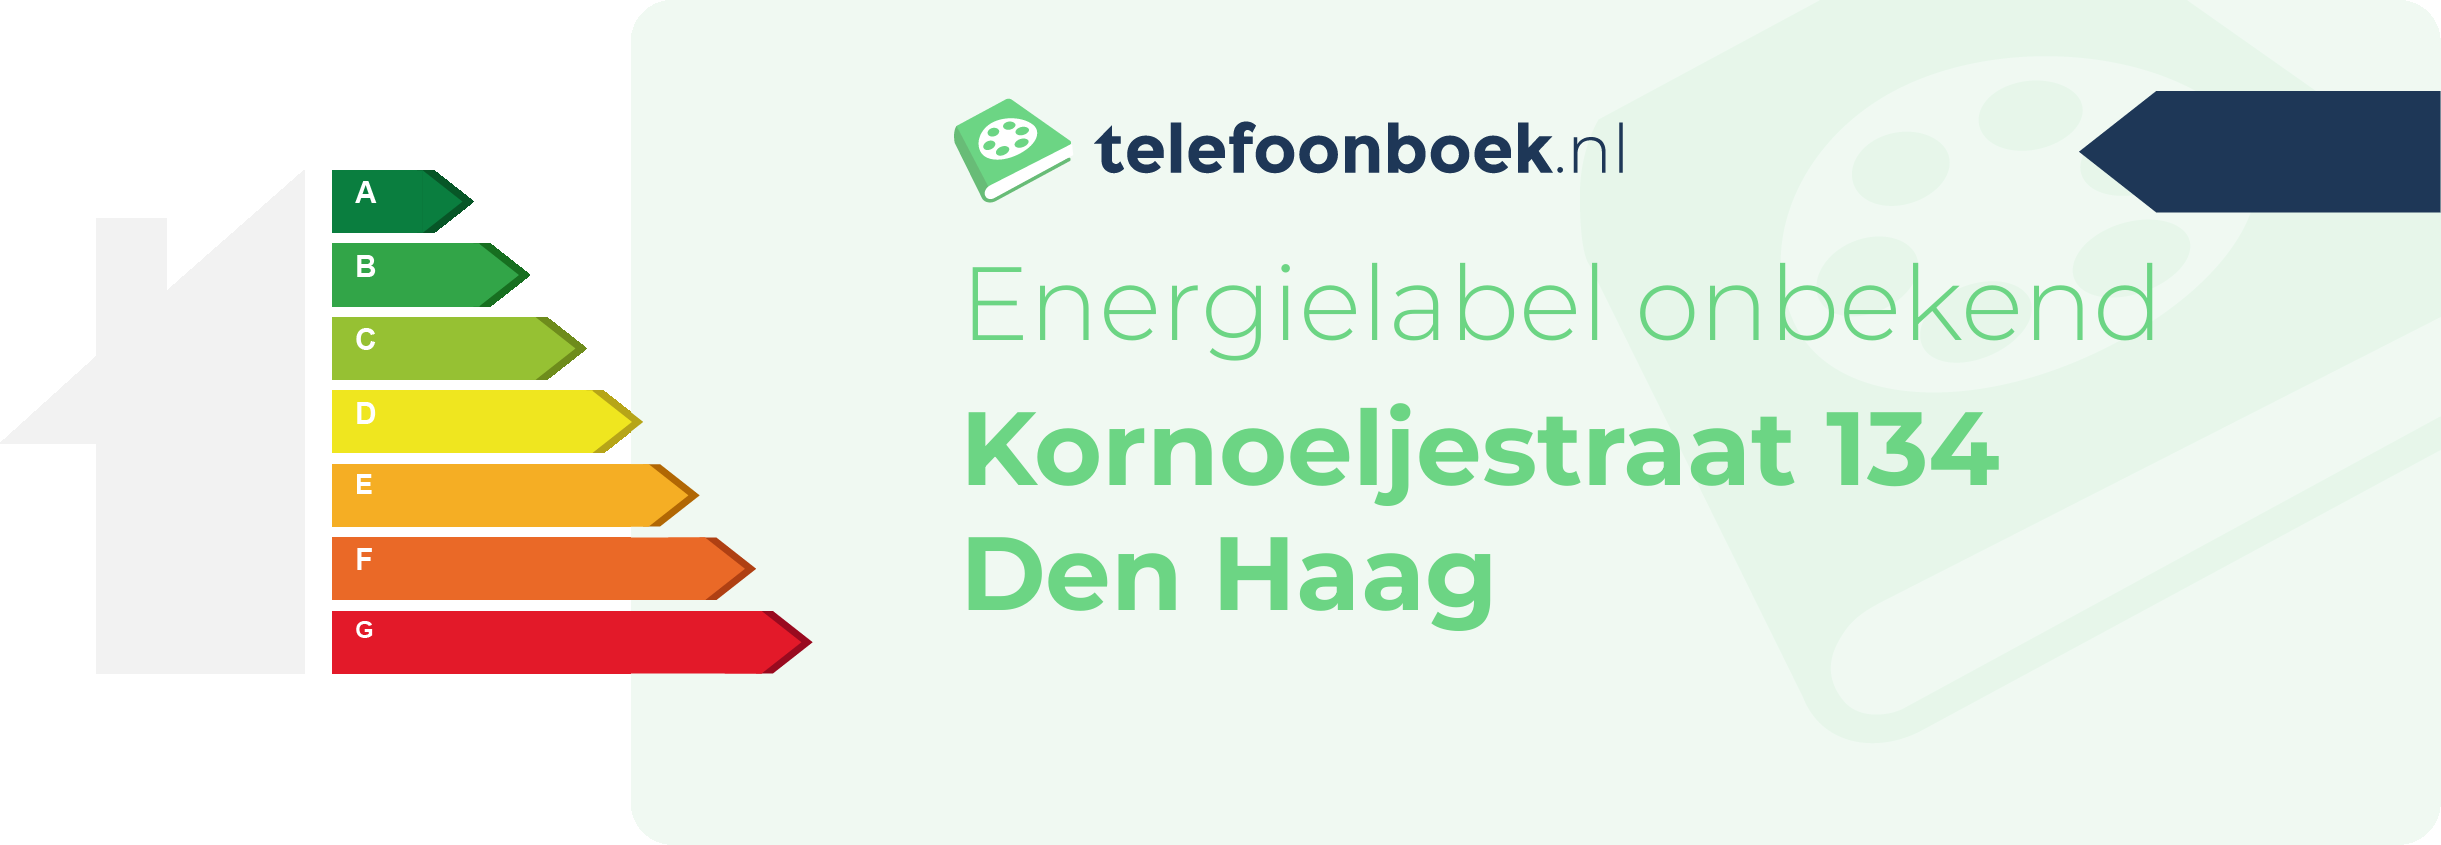 Energielabel Kornoeljestraat 134 Den Haag